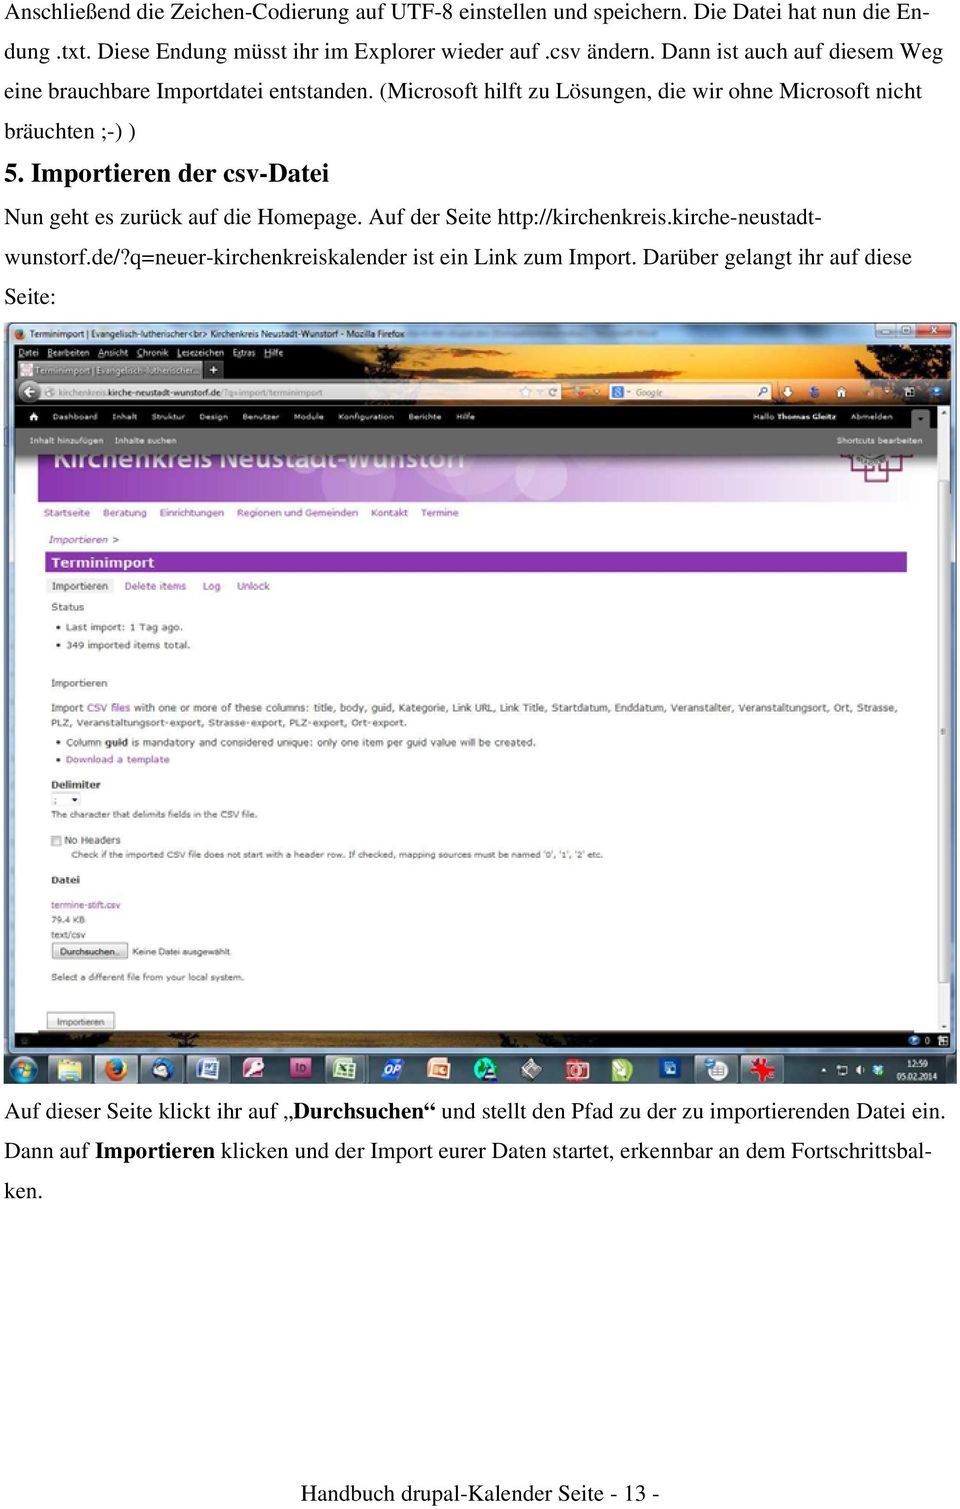 Importieren der csv-datei Nun geht es zurück auf die Homepage. Auf der Seite http://kirchenkreis.kirche-neustadtwunstorf.de/?q=neuer-kirchenkreiskalender ist ein Link zum Import.